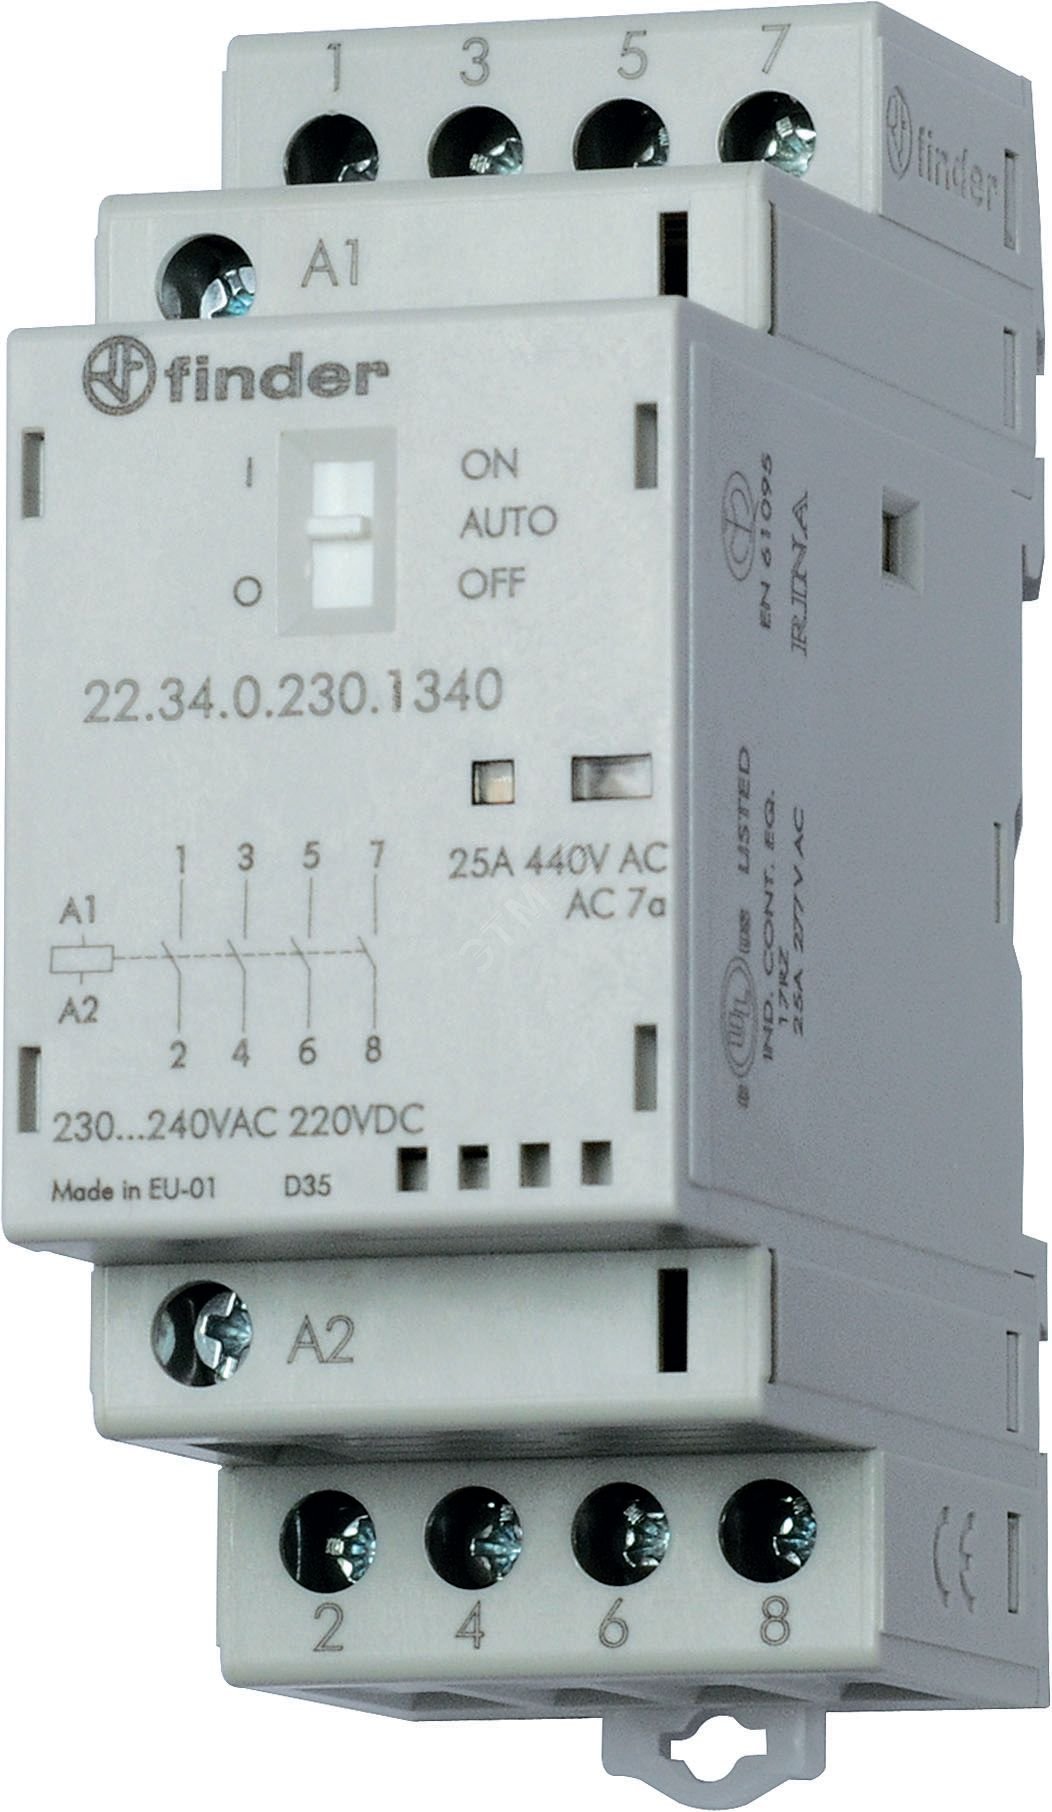 Контактор модульный 2NO+2NC 25А контакты AgSnO2 катушка 230В АС/DC 35мм IP20 переключатель Авто-Вкл-Выкл+механический индикатор/LED 22.34.0.230.4640 FINDER - превью 2